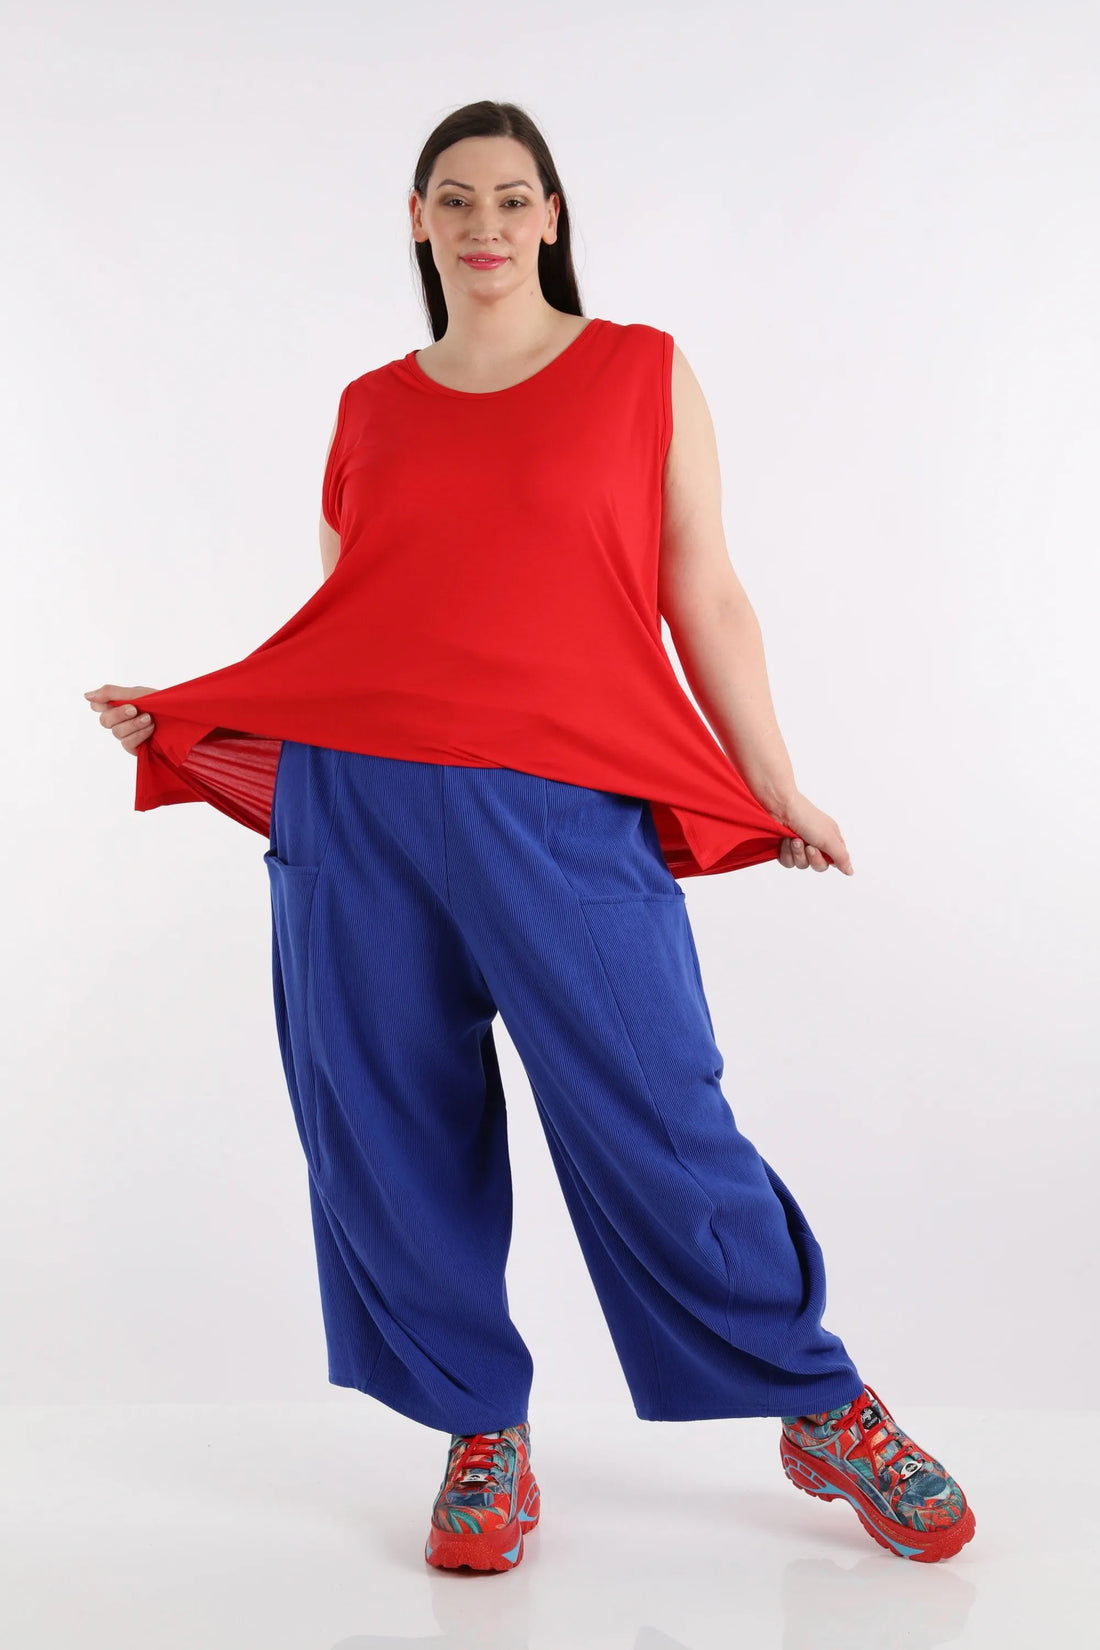 Ballonhose von AKH Fashion aus Baumwolle, 1252.08069, Blau, Unifarben, Ausgefallen, Modern